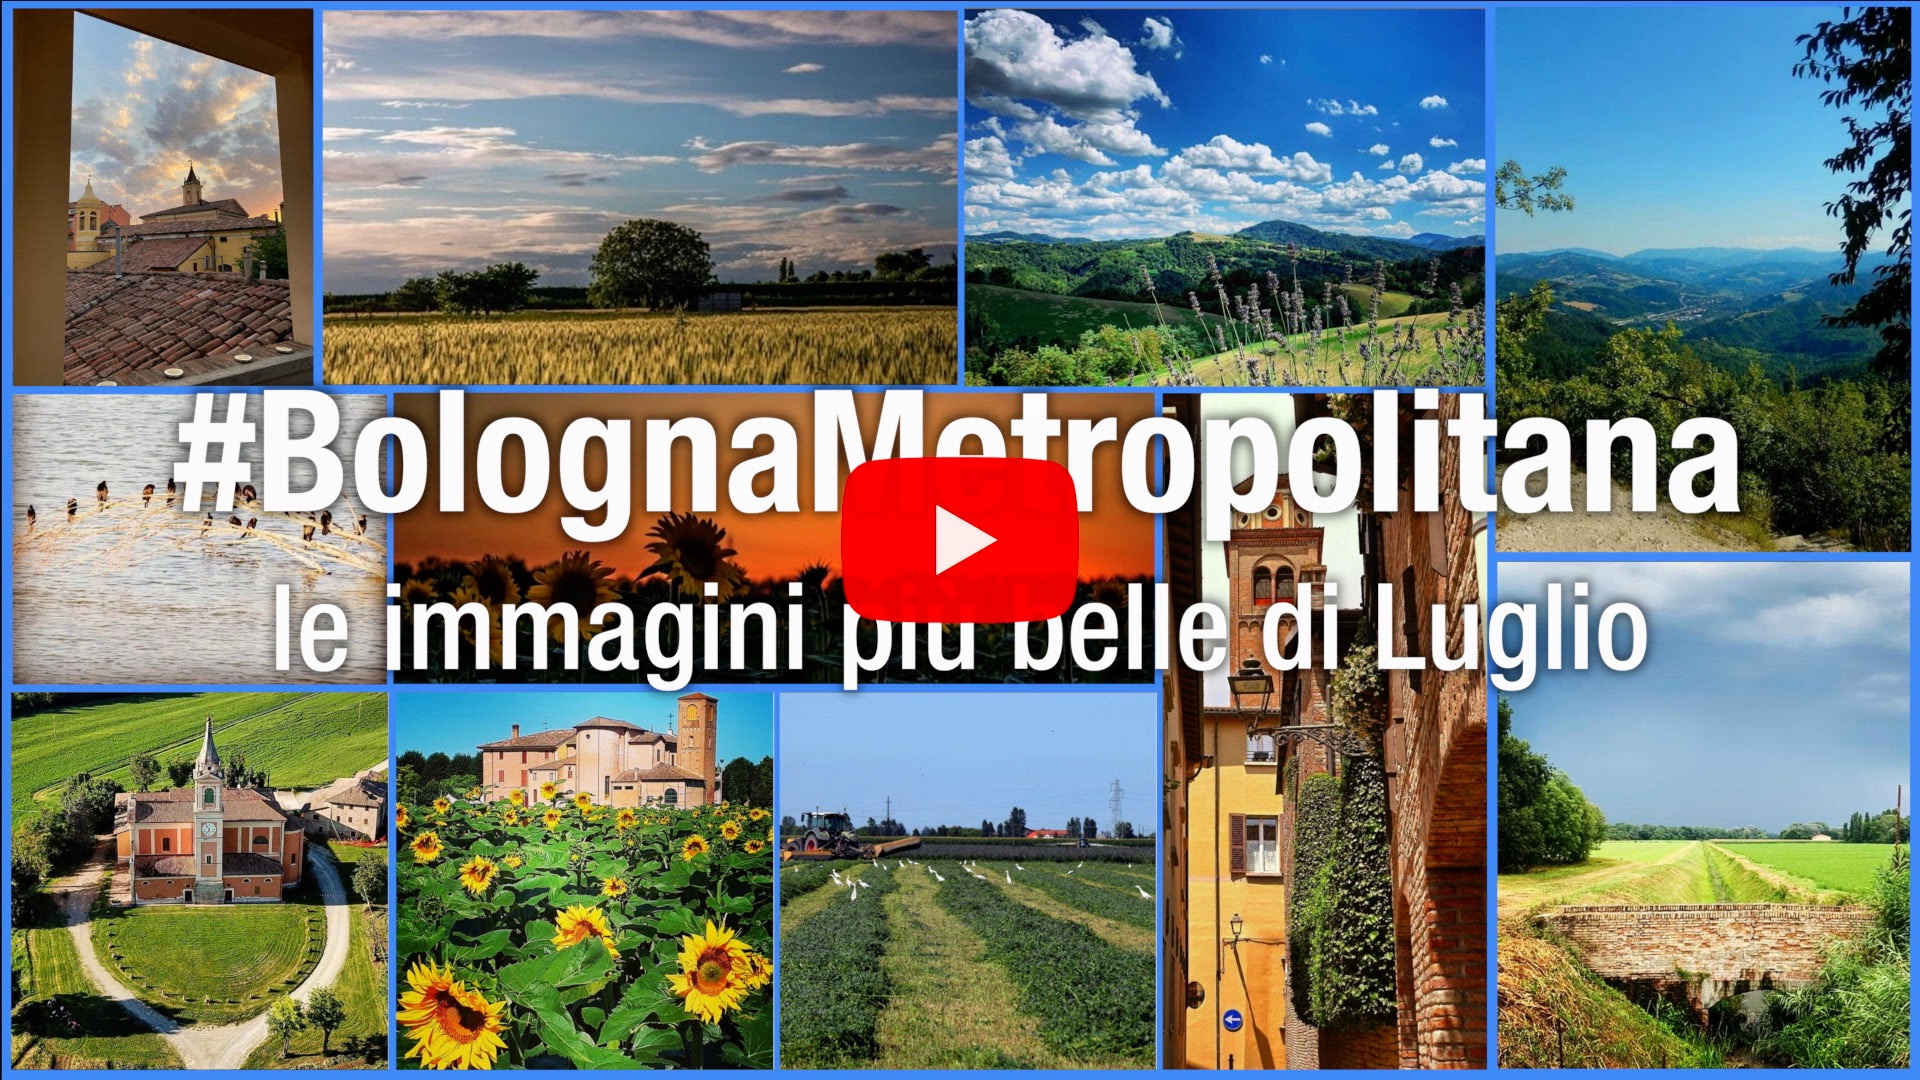 #BolognaMetropolitana - Le immagini più belle di luglio 2020